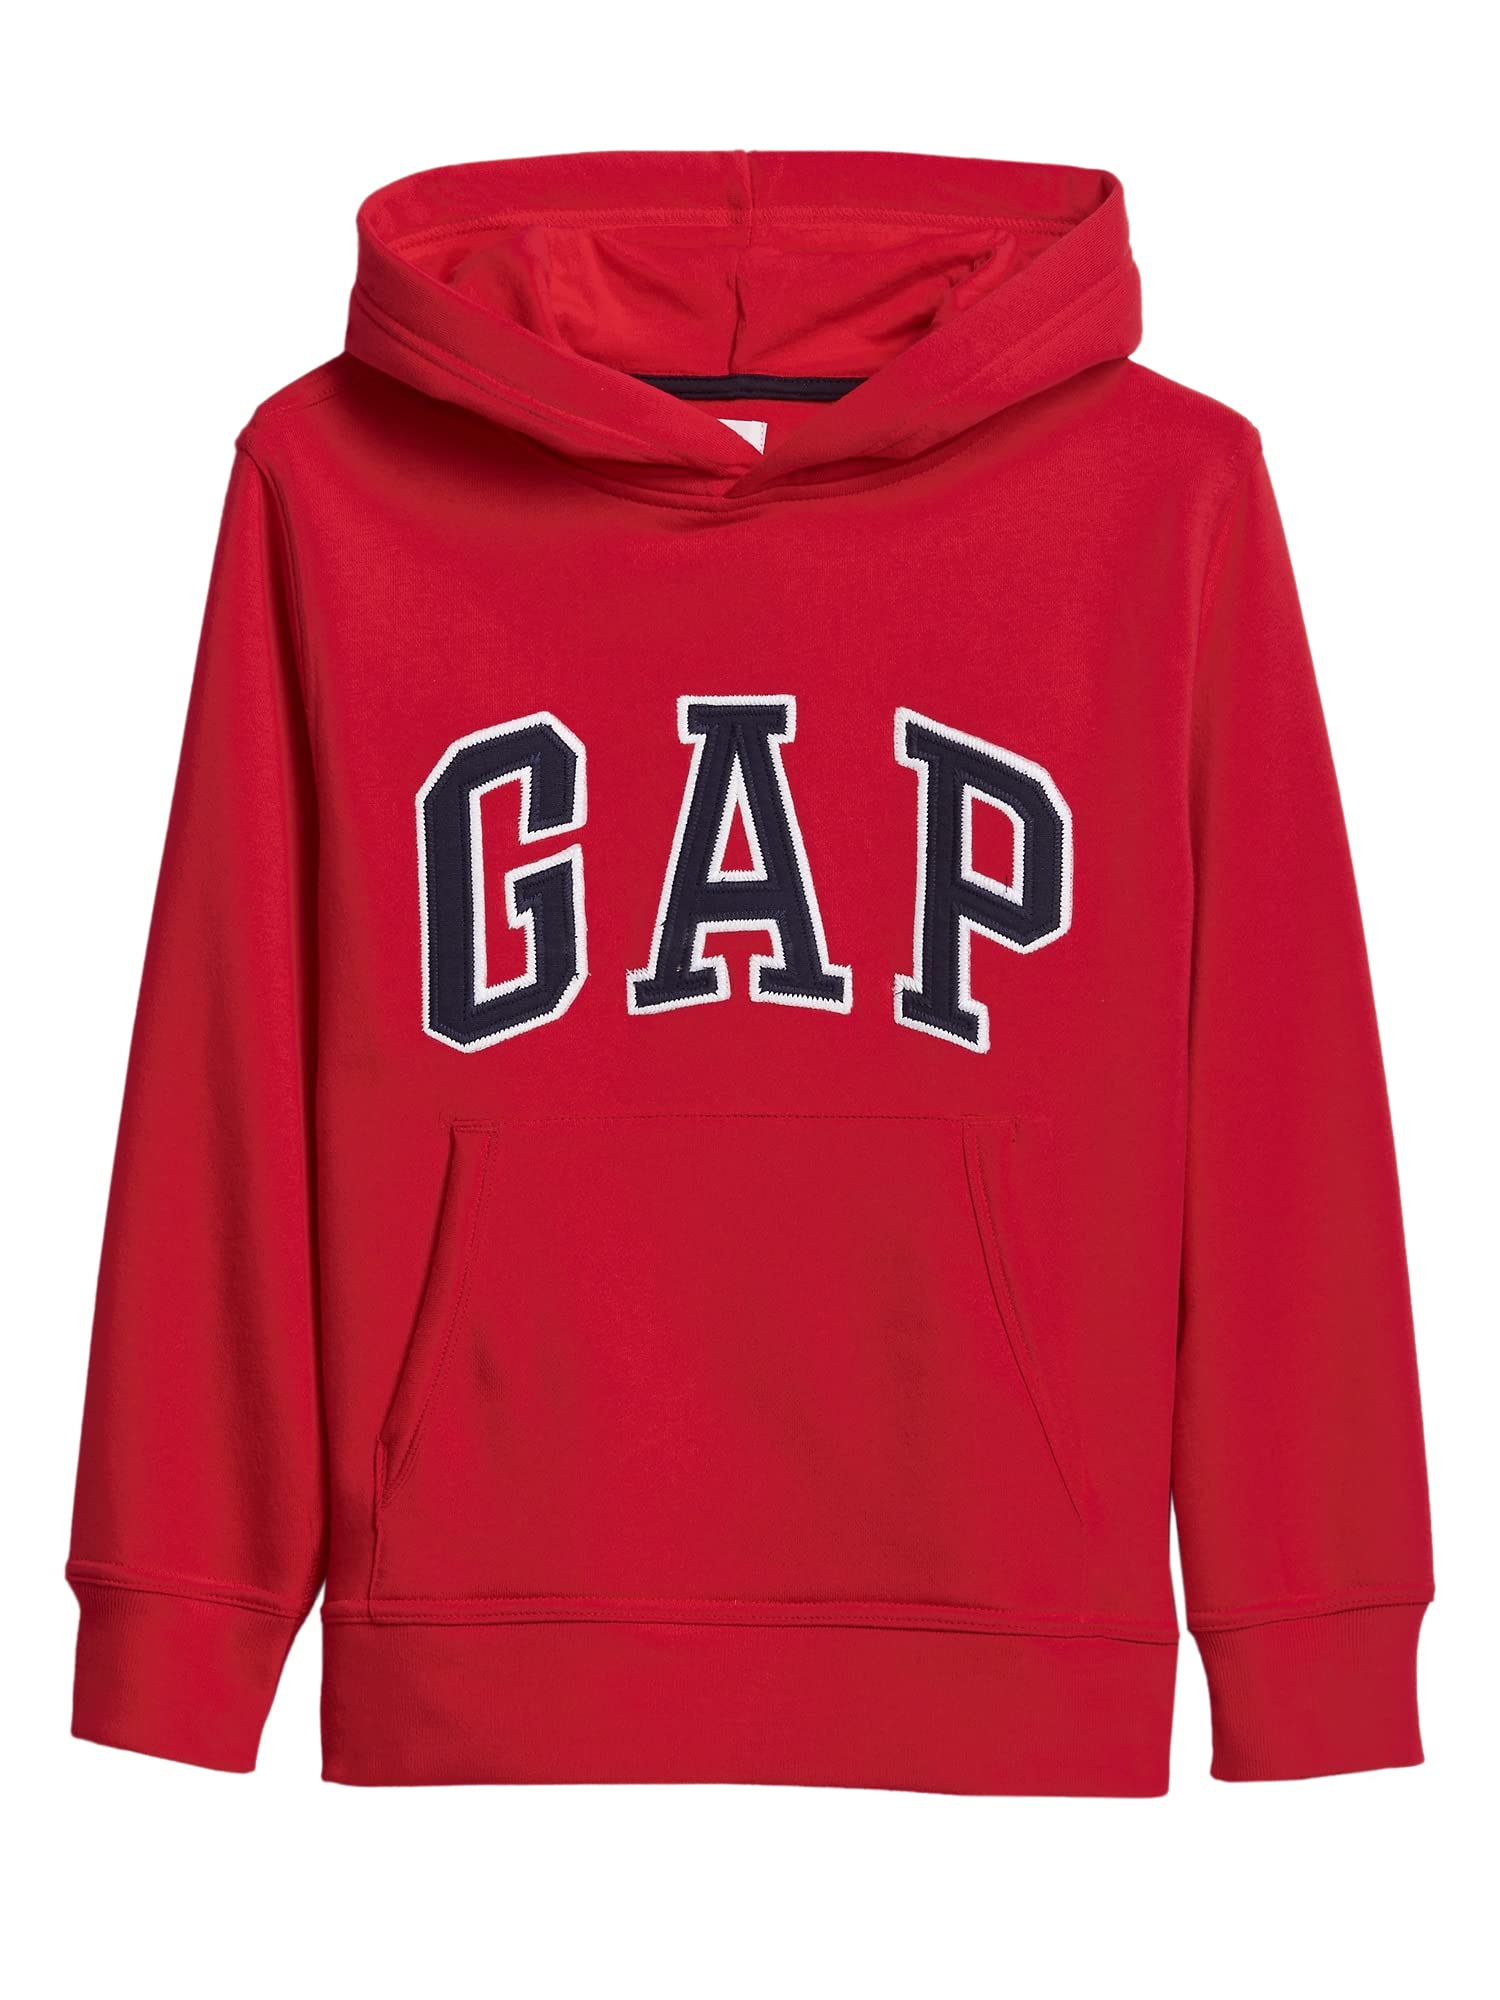 GAP Boys' Logo Hoodie Hooded Sweatshirt